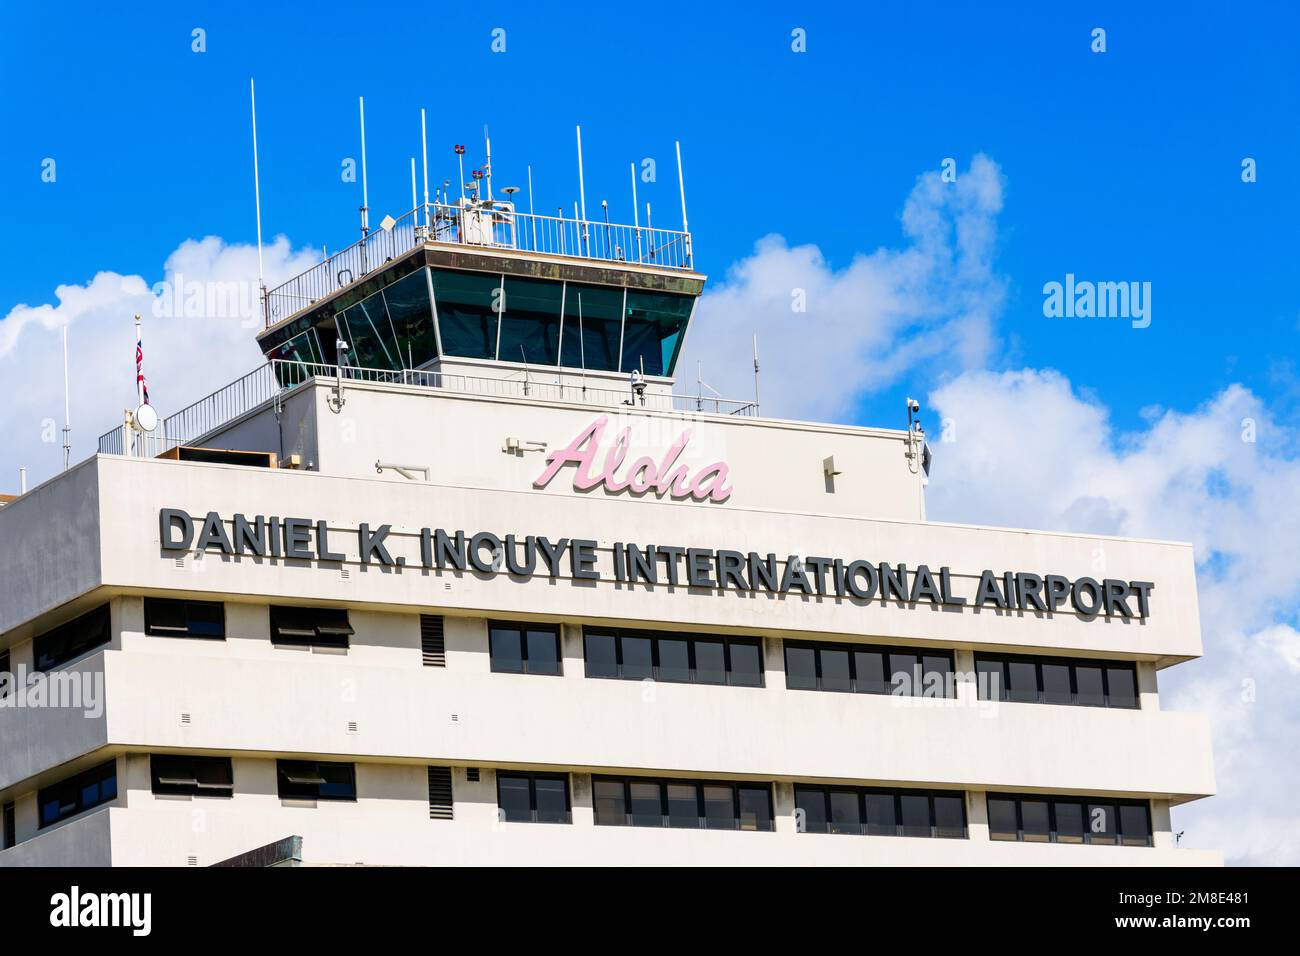 Panneau de l'aéroport international Daniel K. Inouye sur la façade de la tour de l'aéroport international HNL d'Honolulu. - Honolulu, Hawaii, Etats-Unis - 2022 Banque D'Images